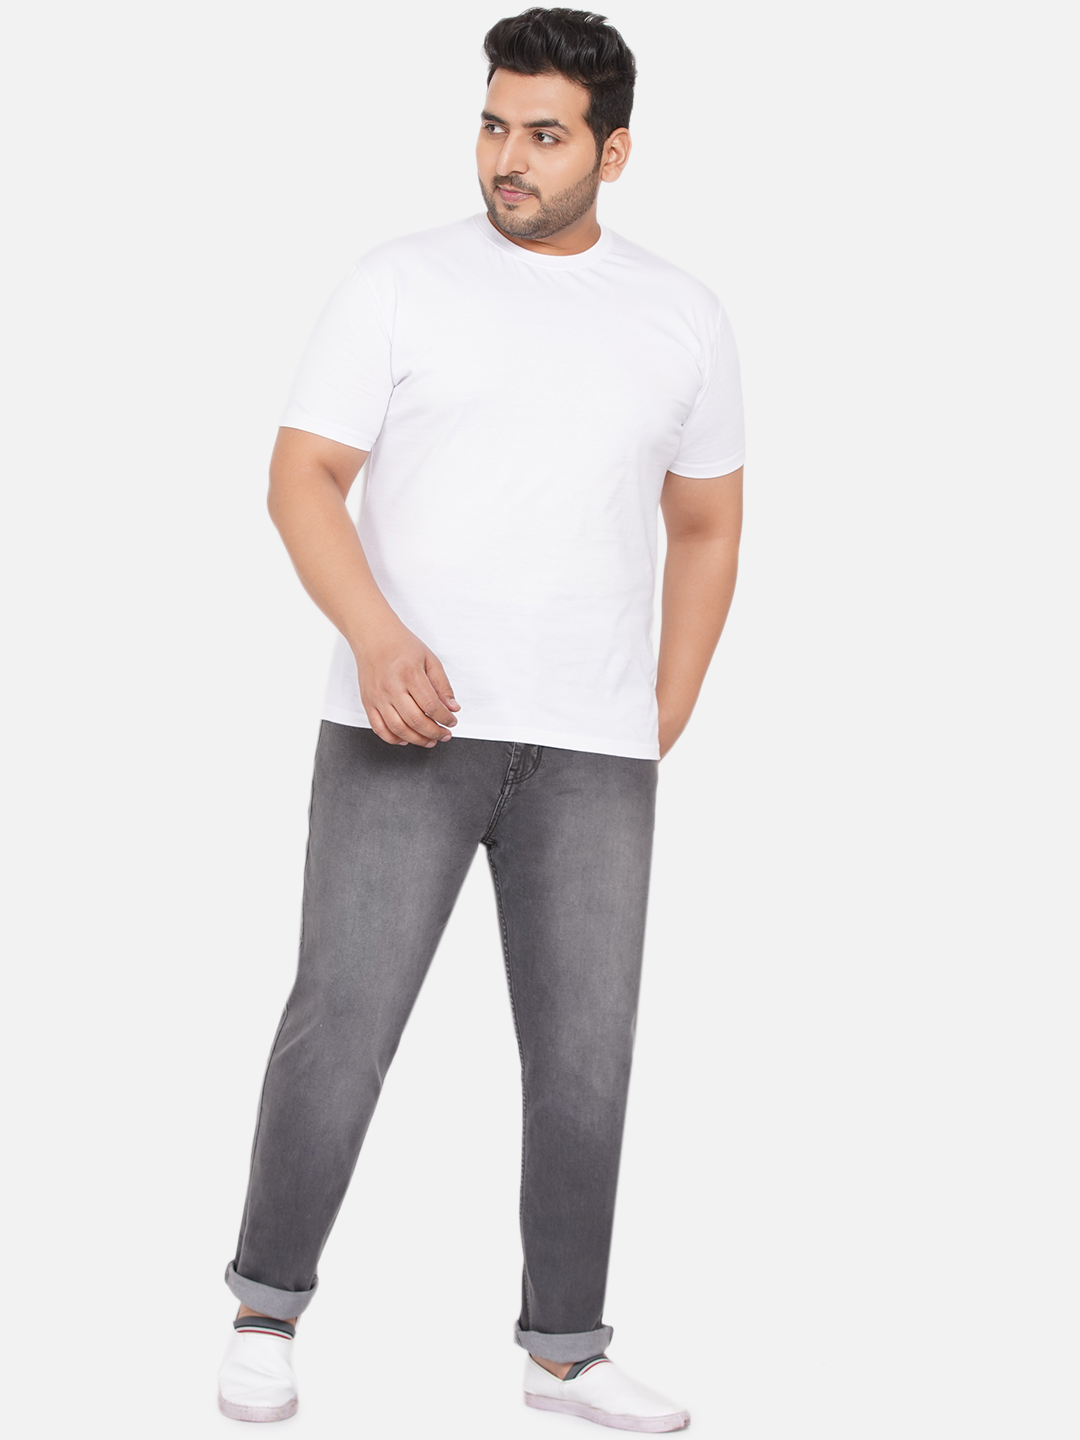 bottomwear/jeans/BEPLJPJ1261A/bepljpj1261a-6.jpg